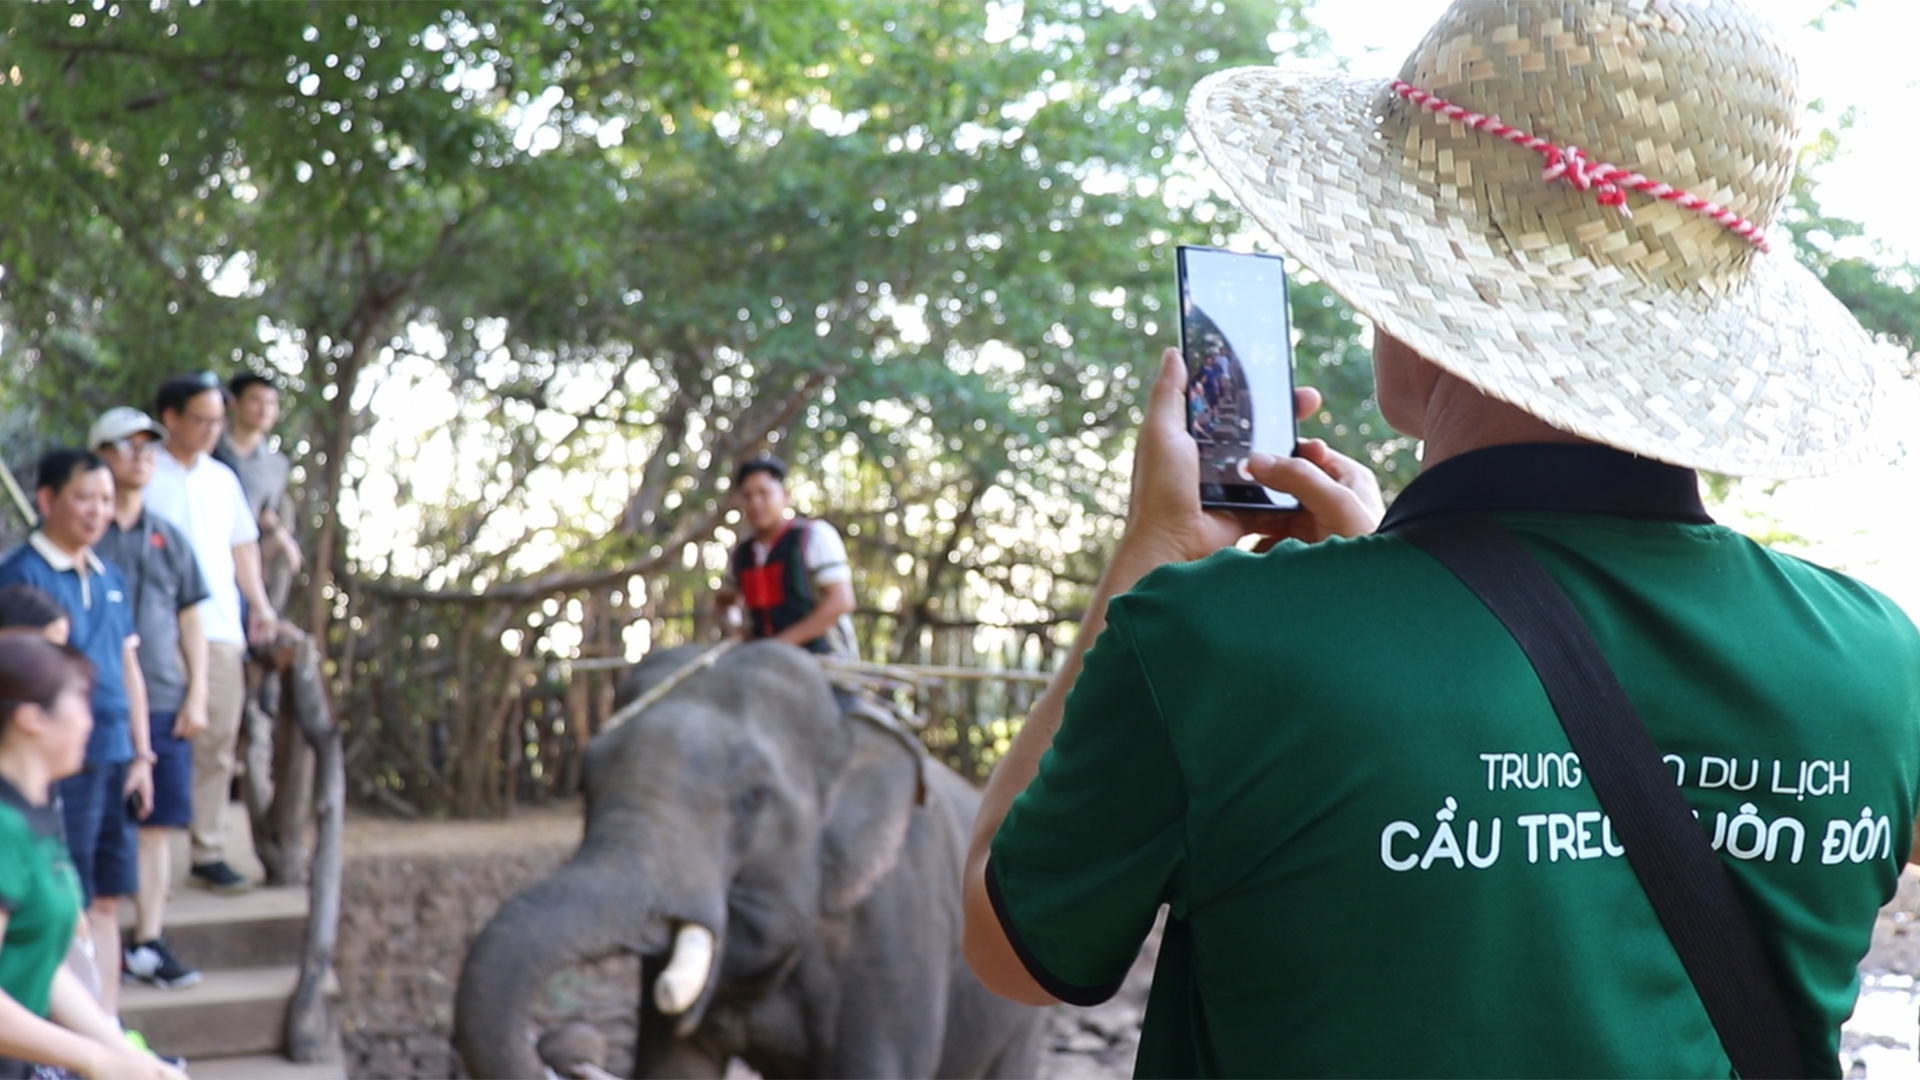 Chính thức dừng dịch vụ cưỡi voi ở Đắk Lắk: khách du lịch, nài voi nói gì?  - Ảnh 1.